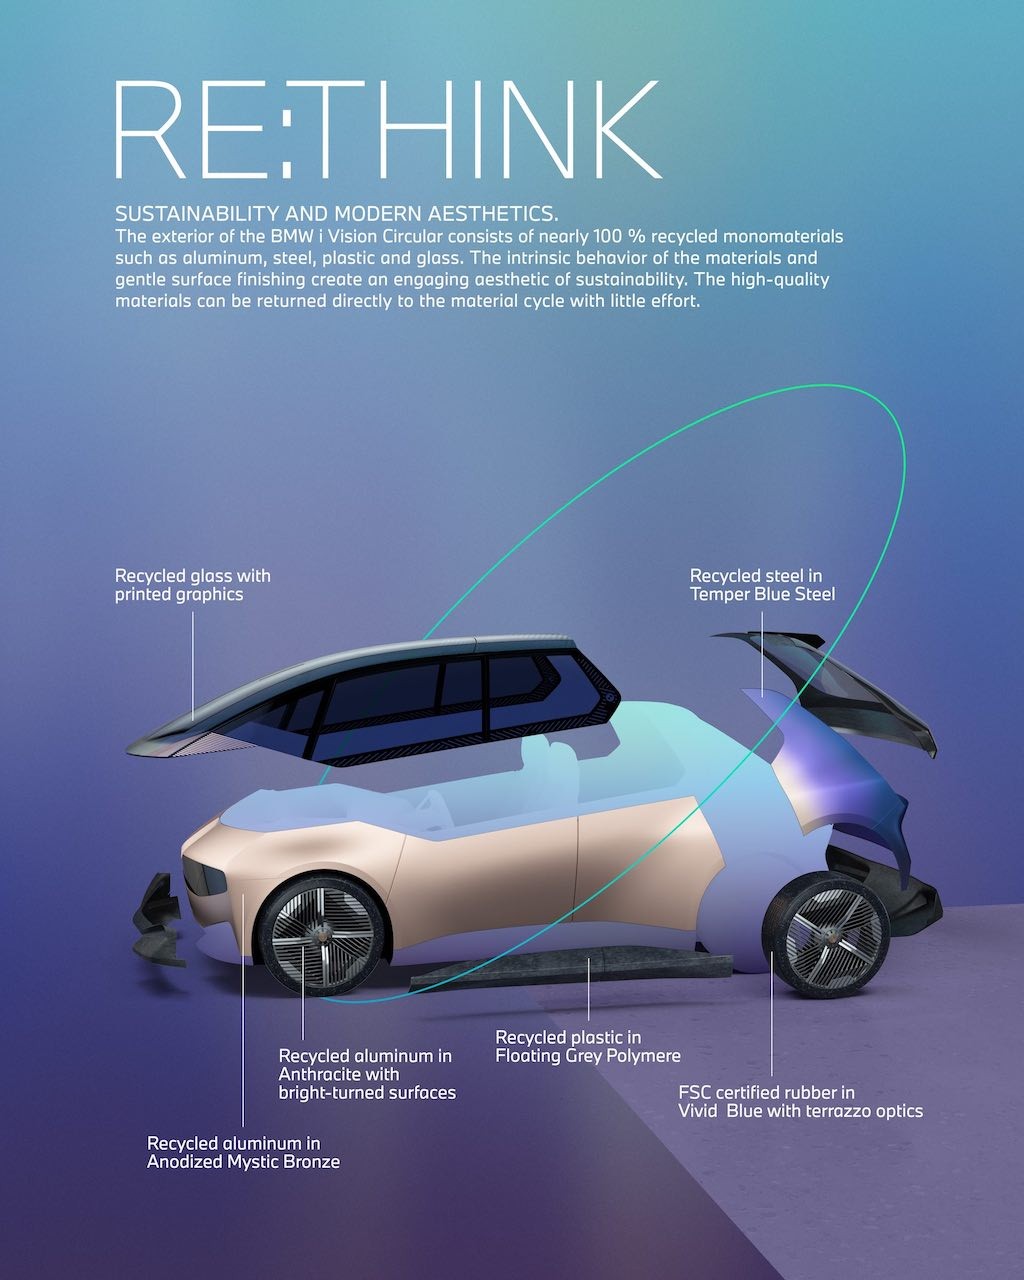 Không chỉ “dị” ở thiết kế, ý tưởng i Vision Circular của BMW còn đột phá về cả công nghệ bảo vệ môi trường ảnh 11